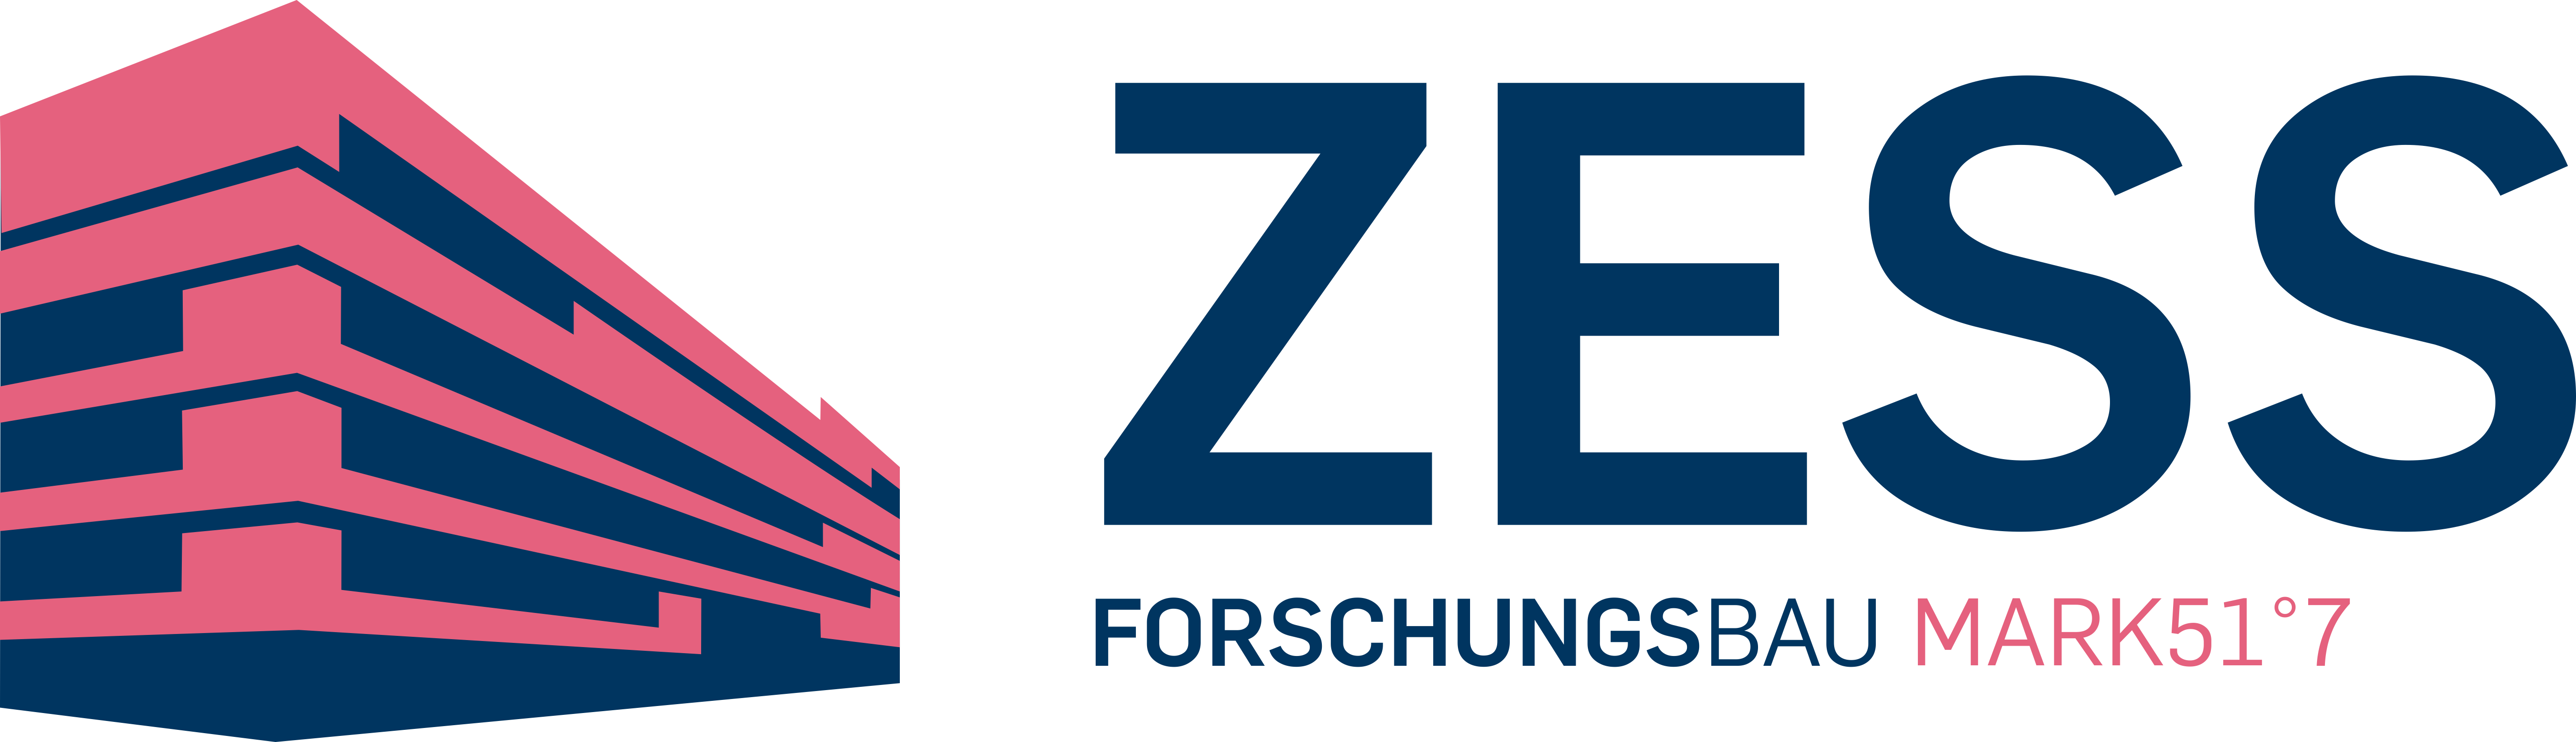 Zess logo